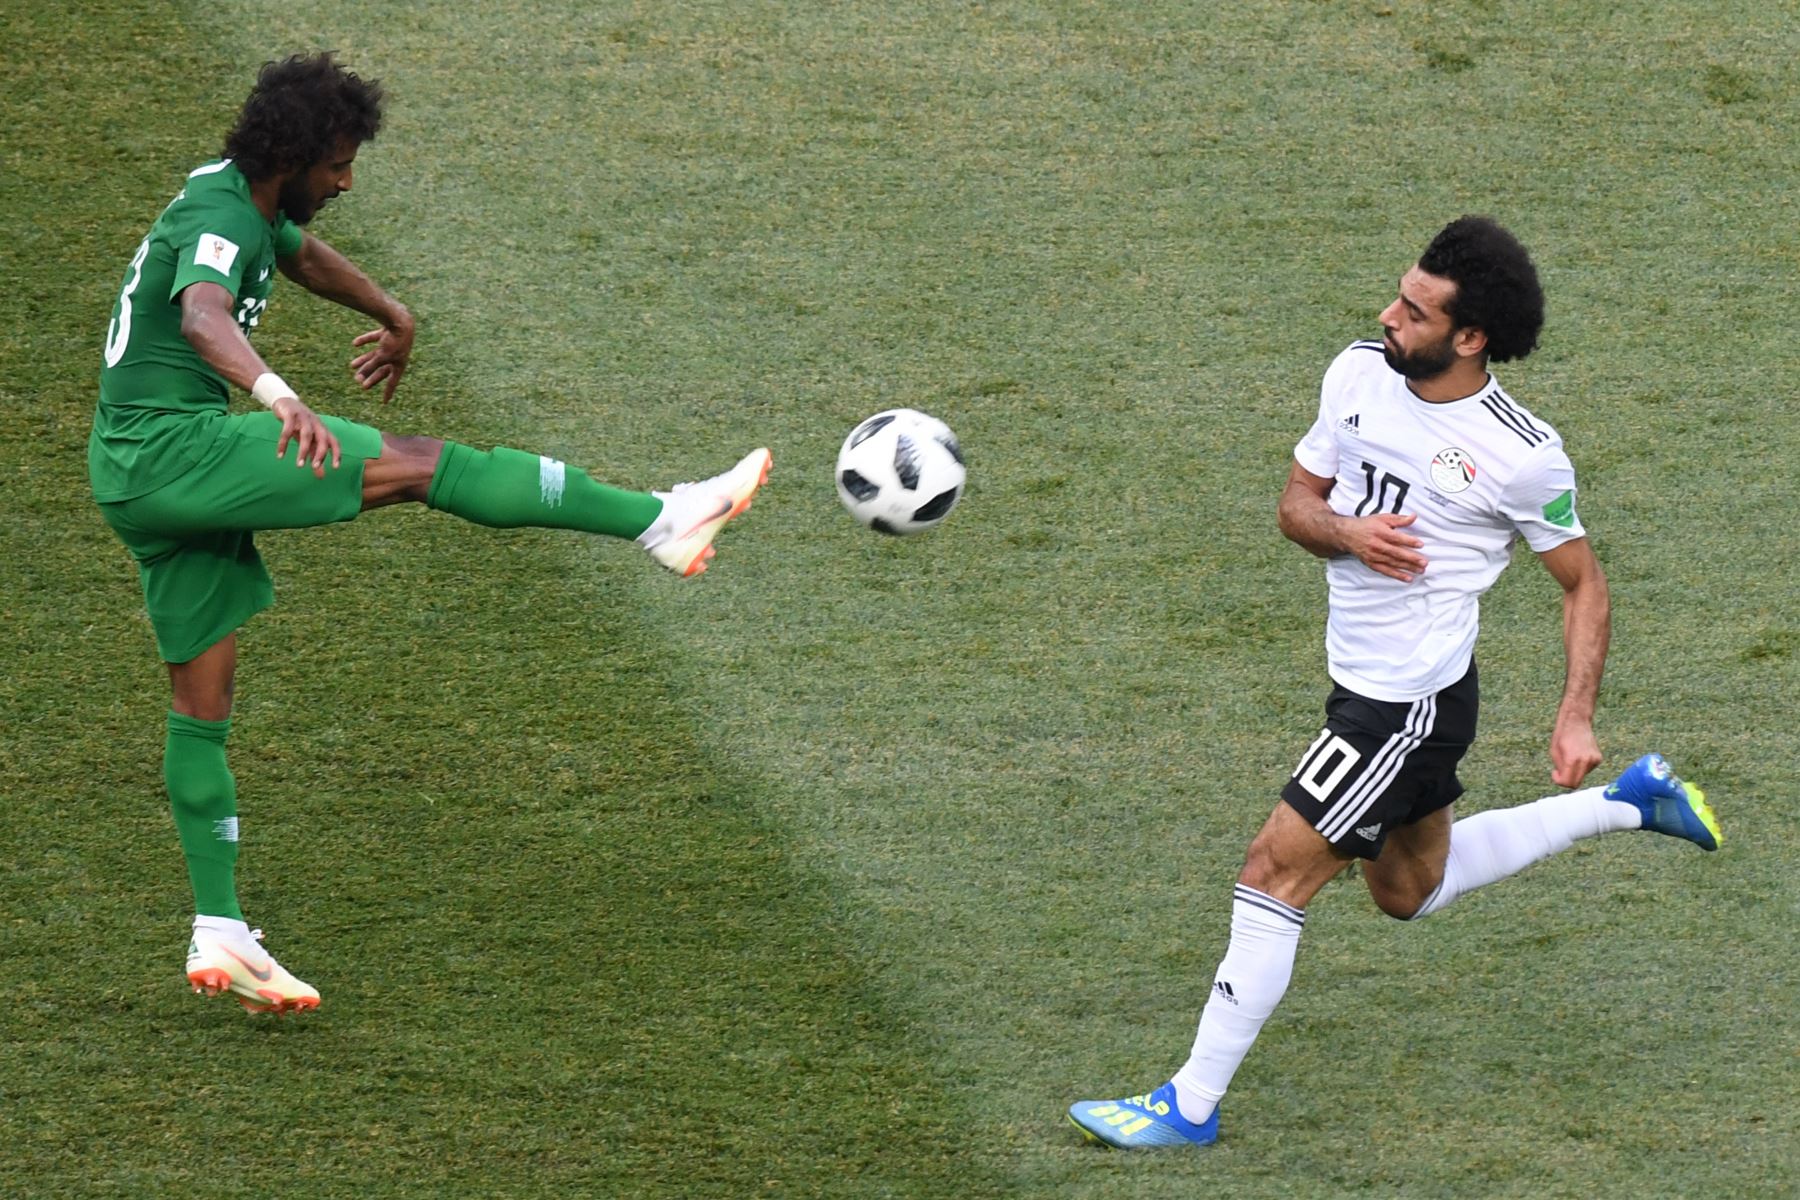 El defensor de Arabia Saudita Yasser Al-Shahrani (L) despeja el balón por delante del delantero egipcio Mohamed Salah durante el partido de fútbol del Grupo A de la Copa Mundial Rusia 2018 entre Arabia Saudita y Egipto en el Volgograd Arena de Volgogrado el 25 de junio de 2018. / AFP